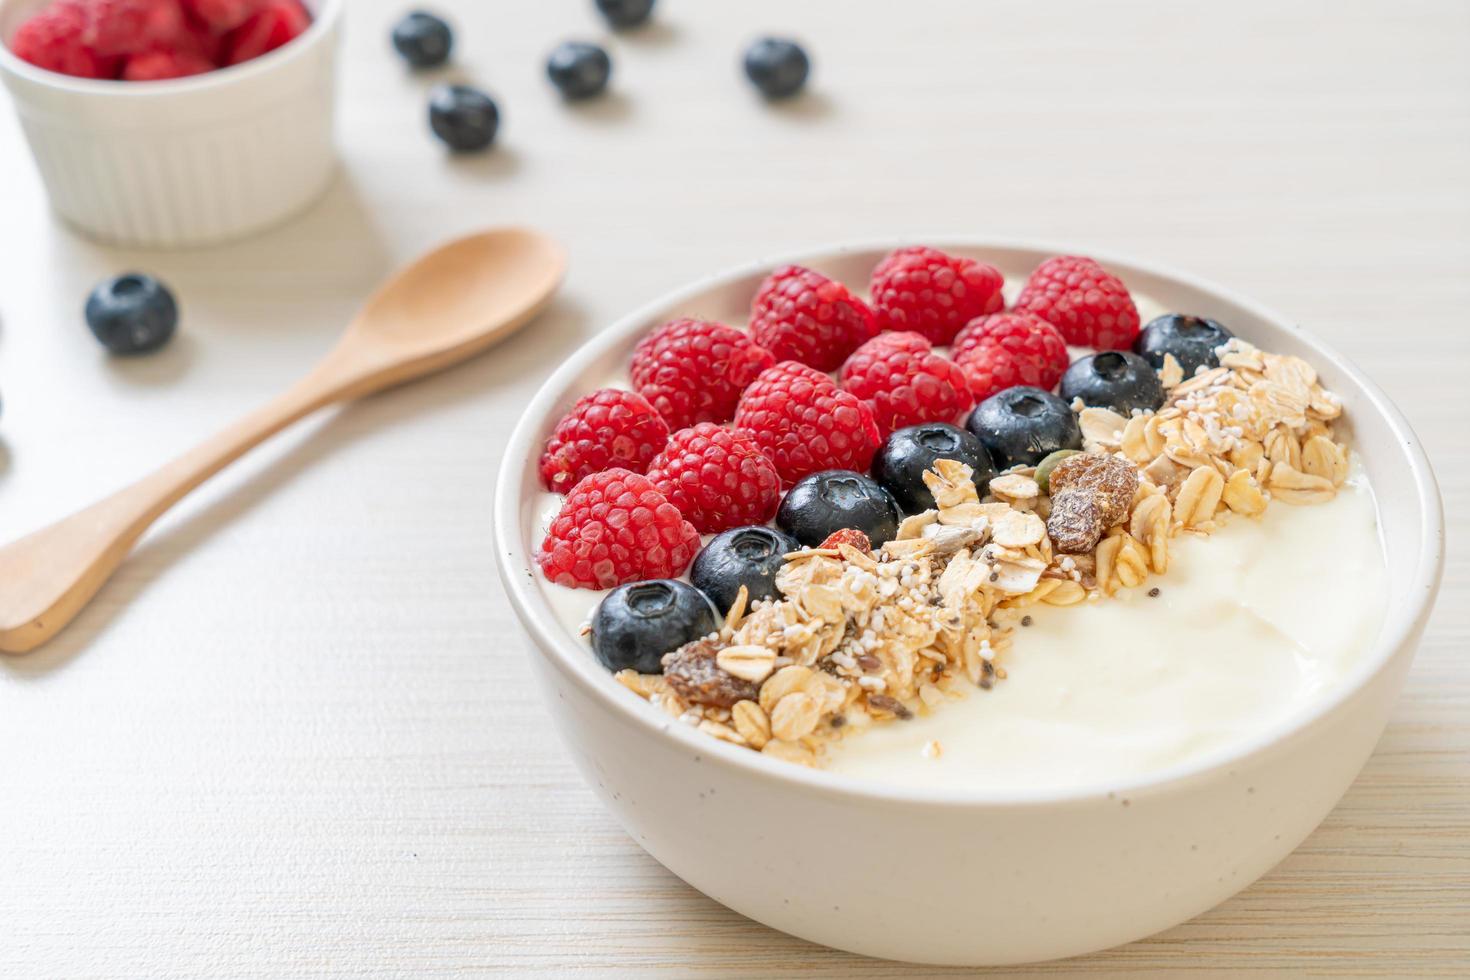 hausgemachte Joghurt-Bowl mit Himbeere, Heidelbeere und Müsli - gesunder Food-Style foto